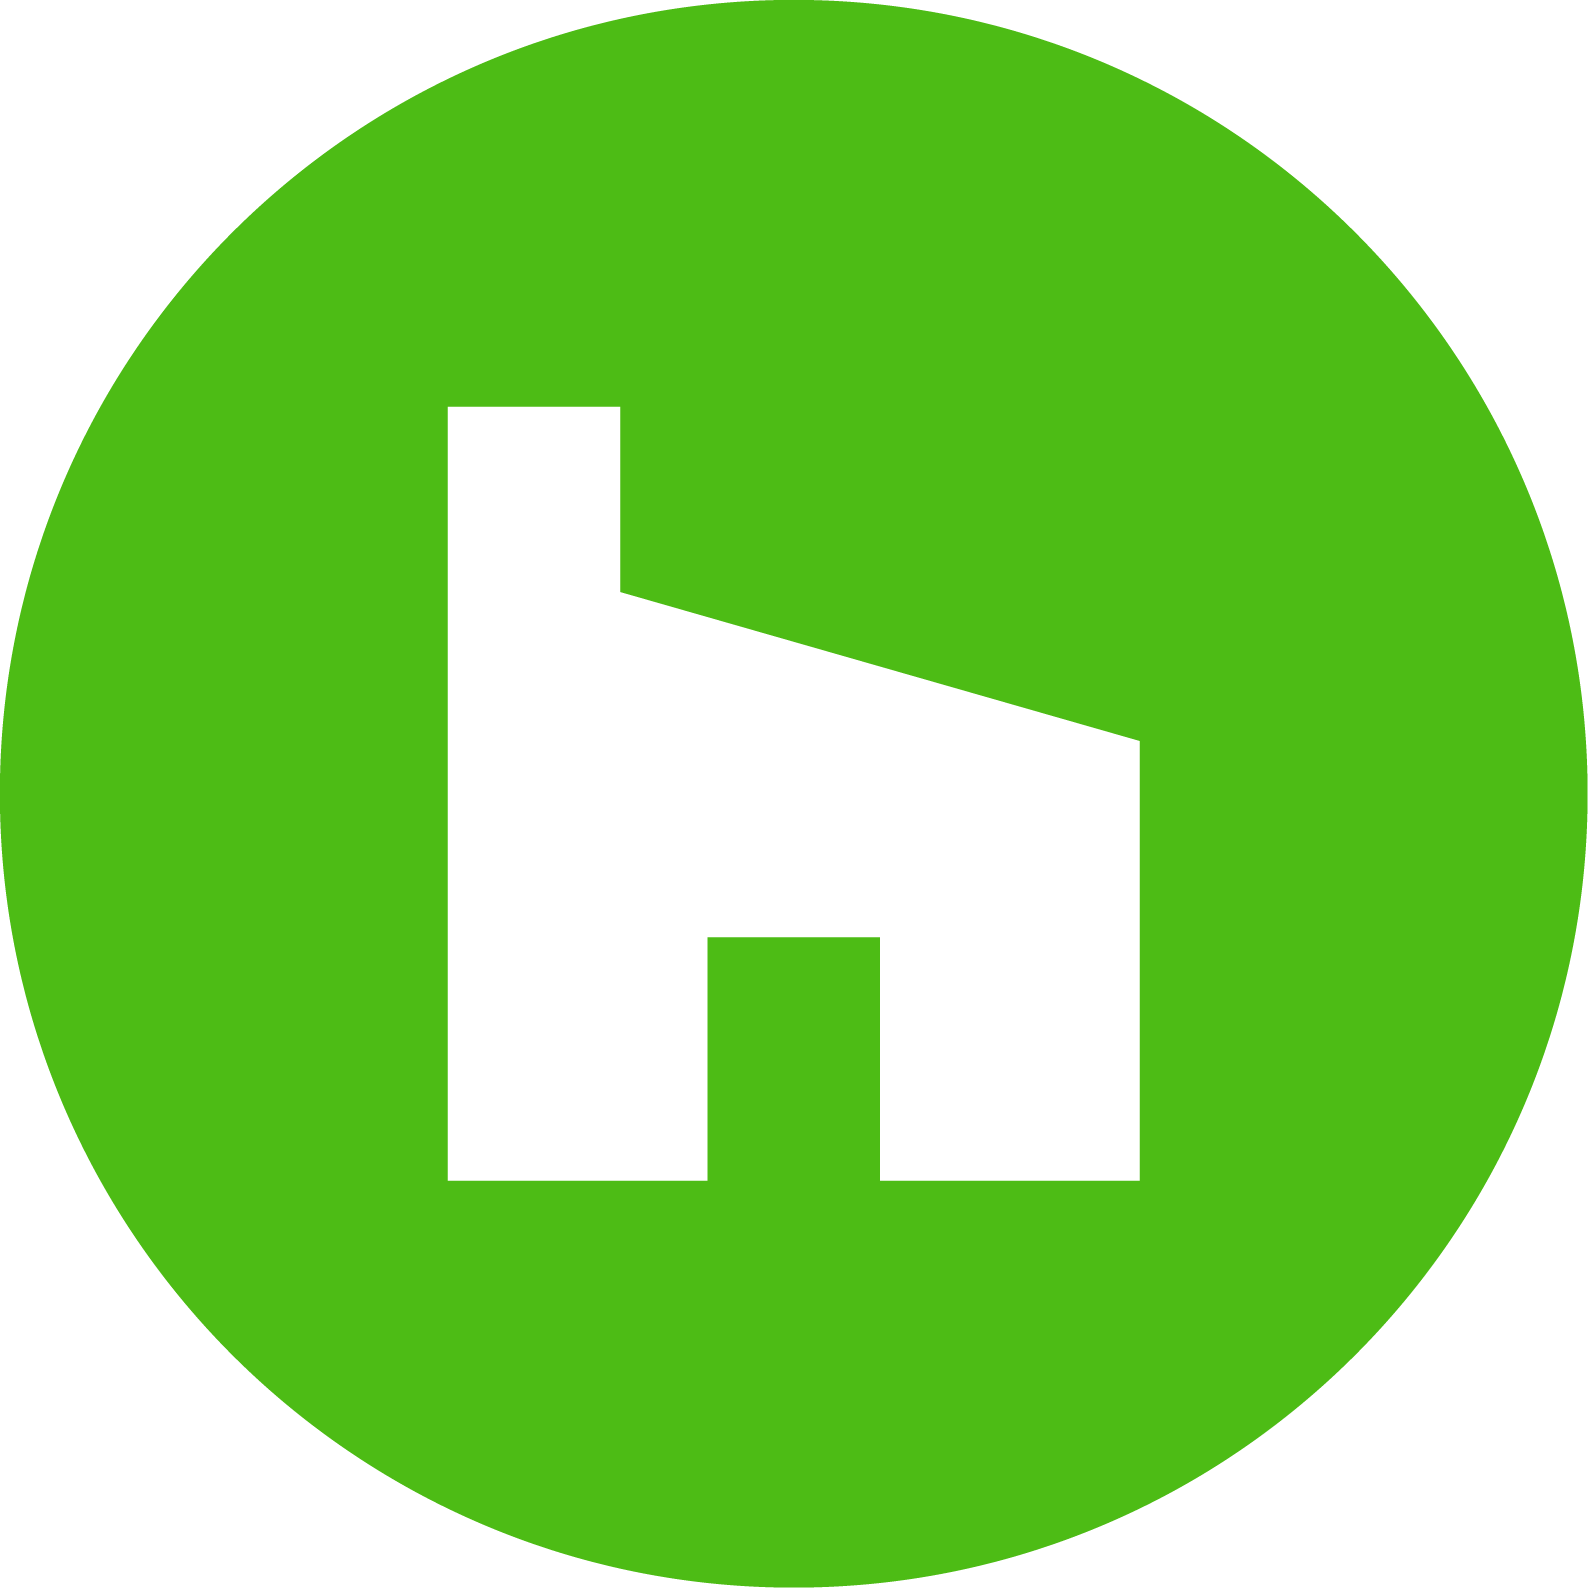 houzz logo small